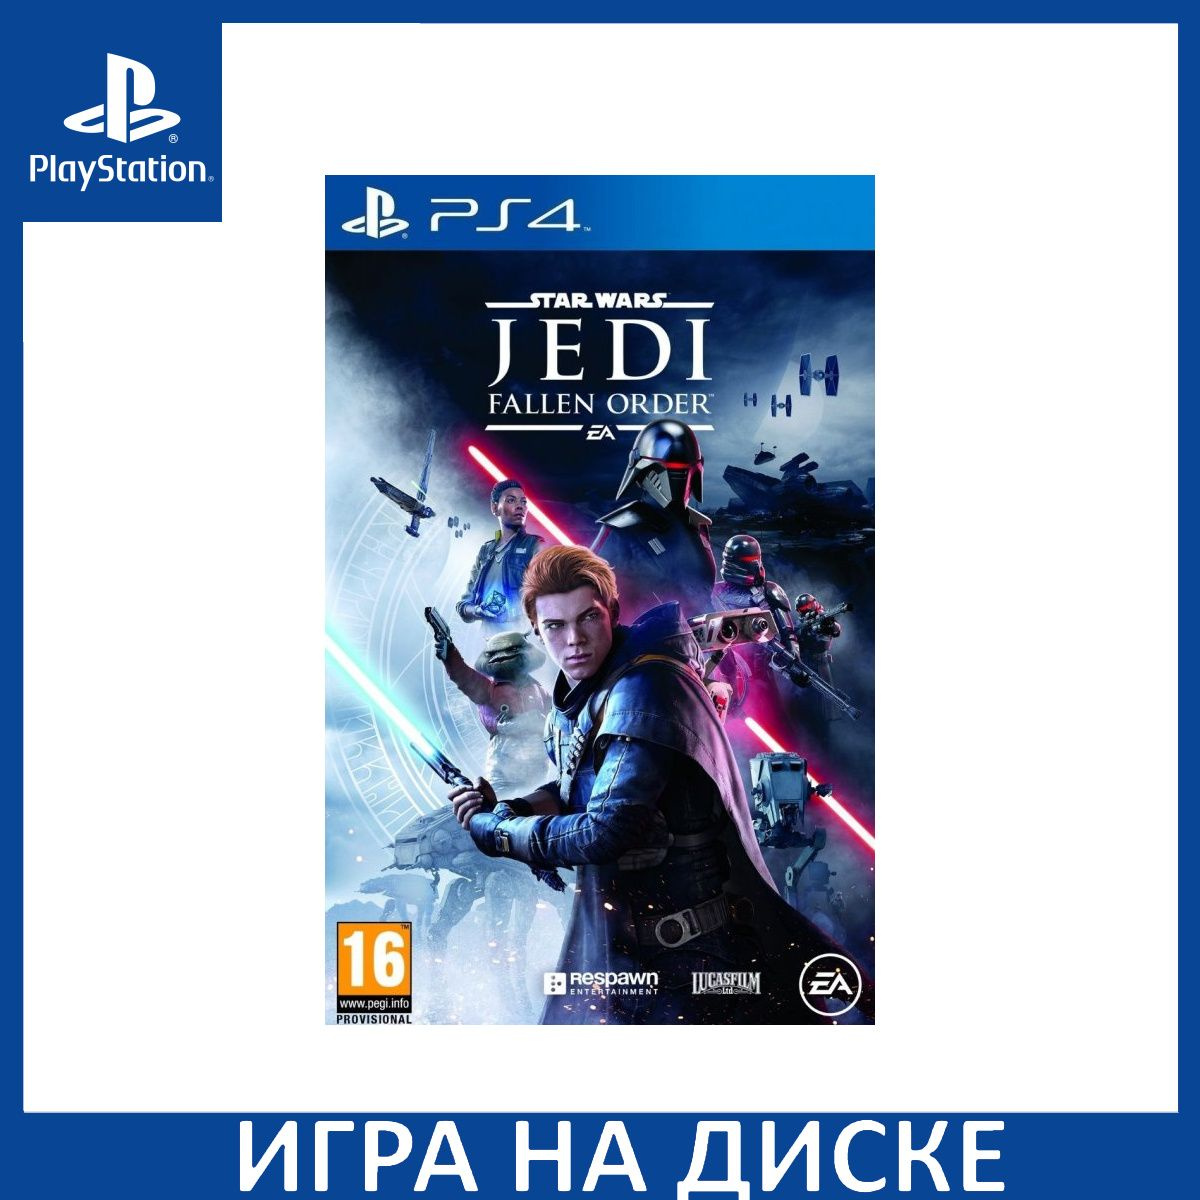 Диск с Игрой Star Wars: JEDI Fallen Order (Джедаи: Павший Орден) (PS4). Новый лицензионный запечатанный диск.